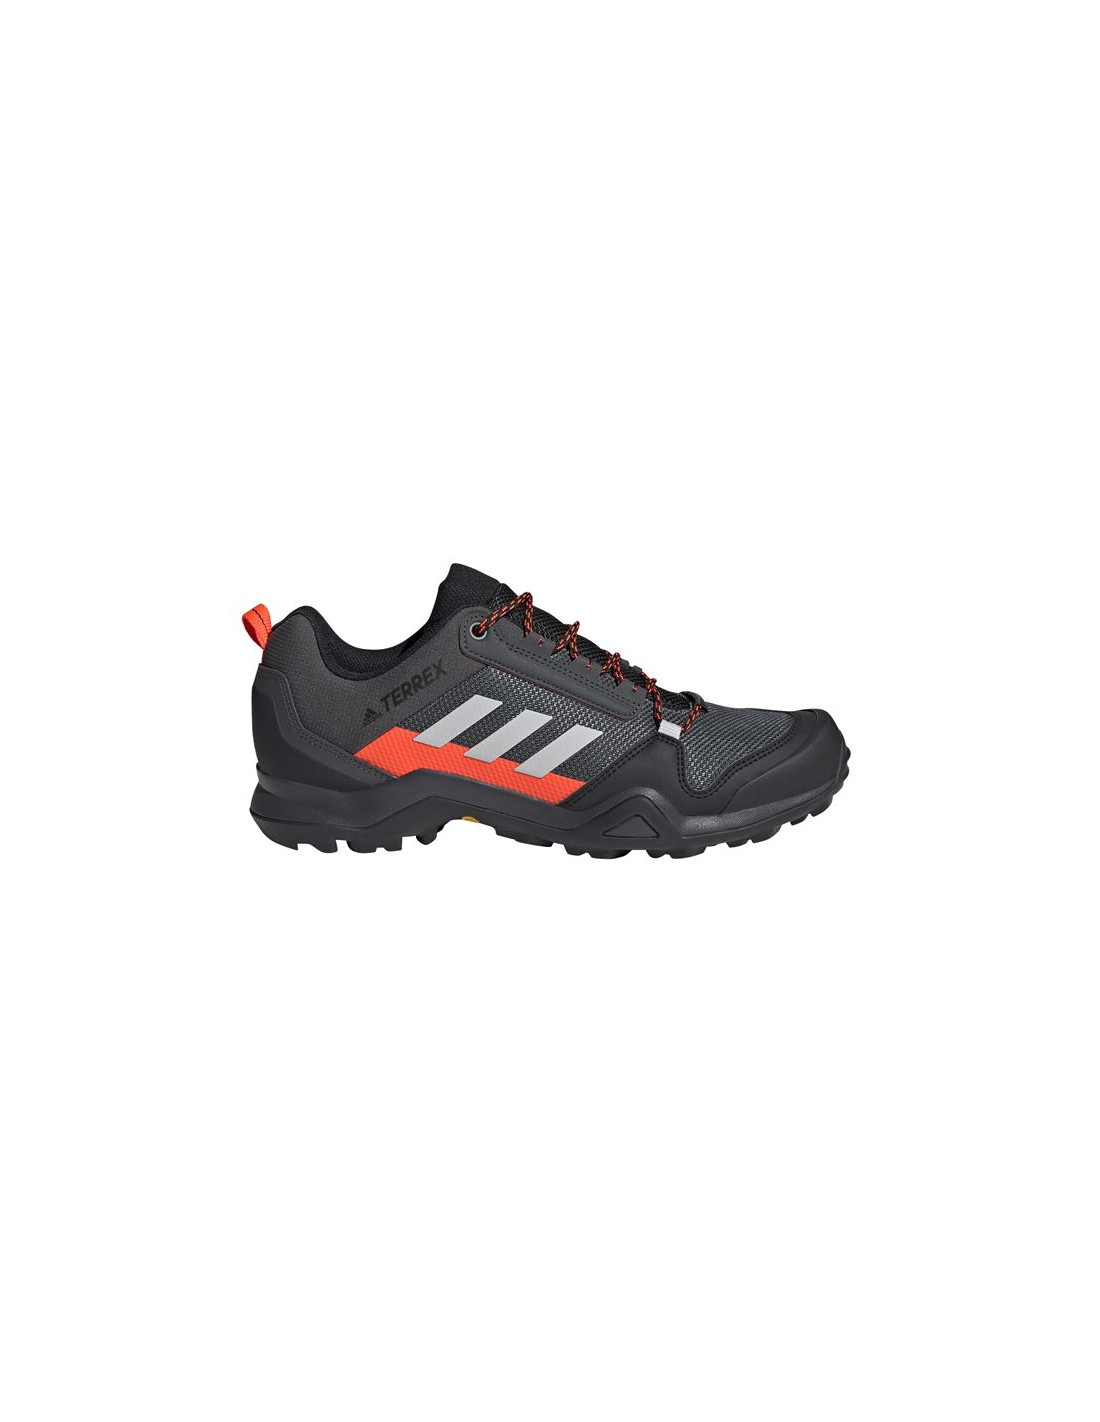 Zapatillas de senderismo adidas terrex ax3 hiking m solid grey